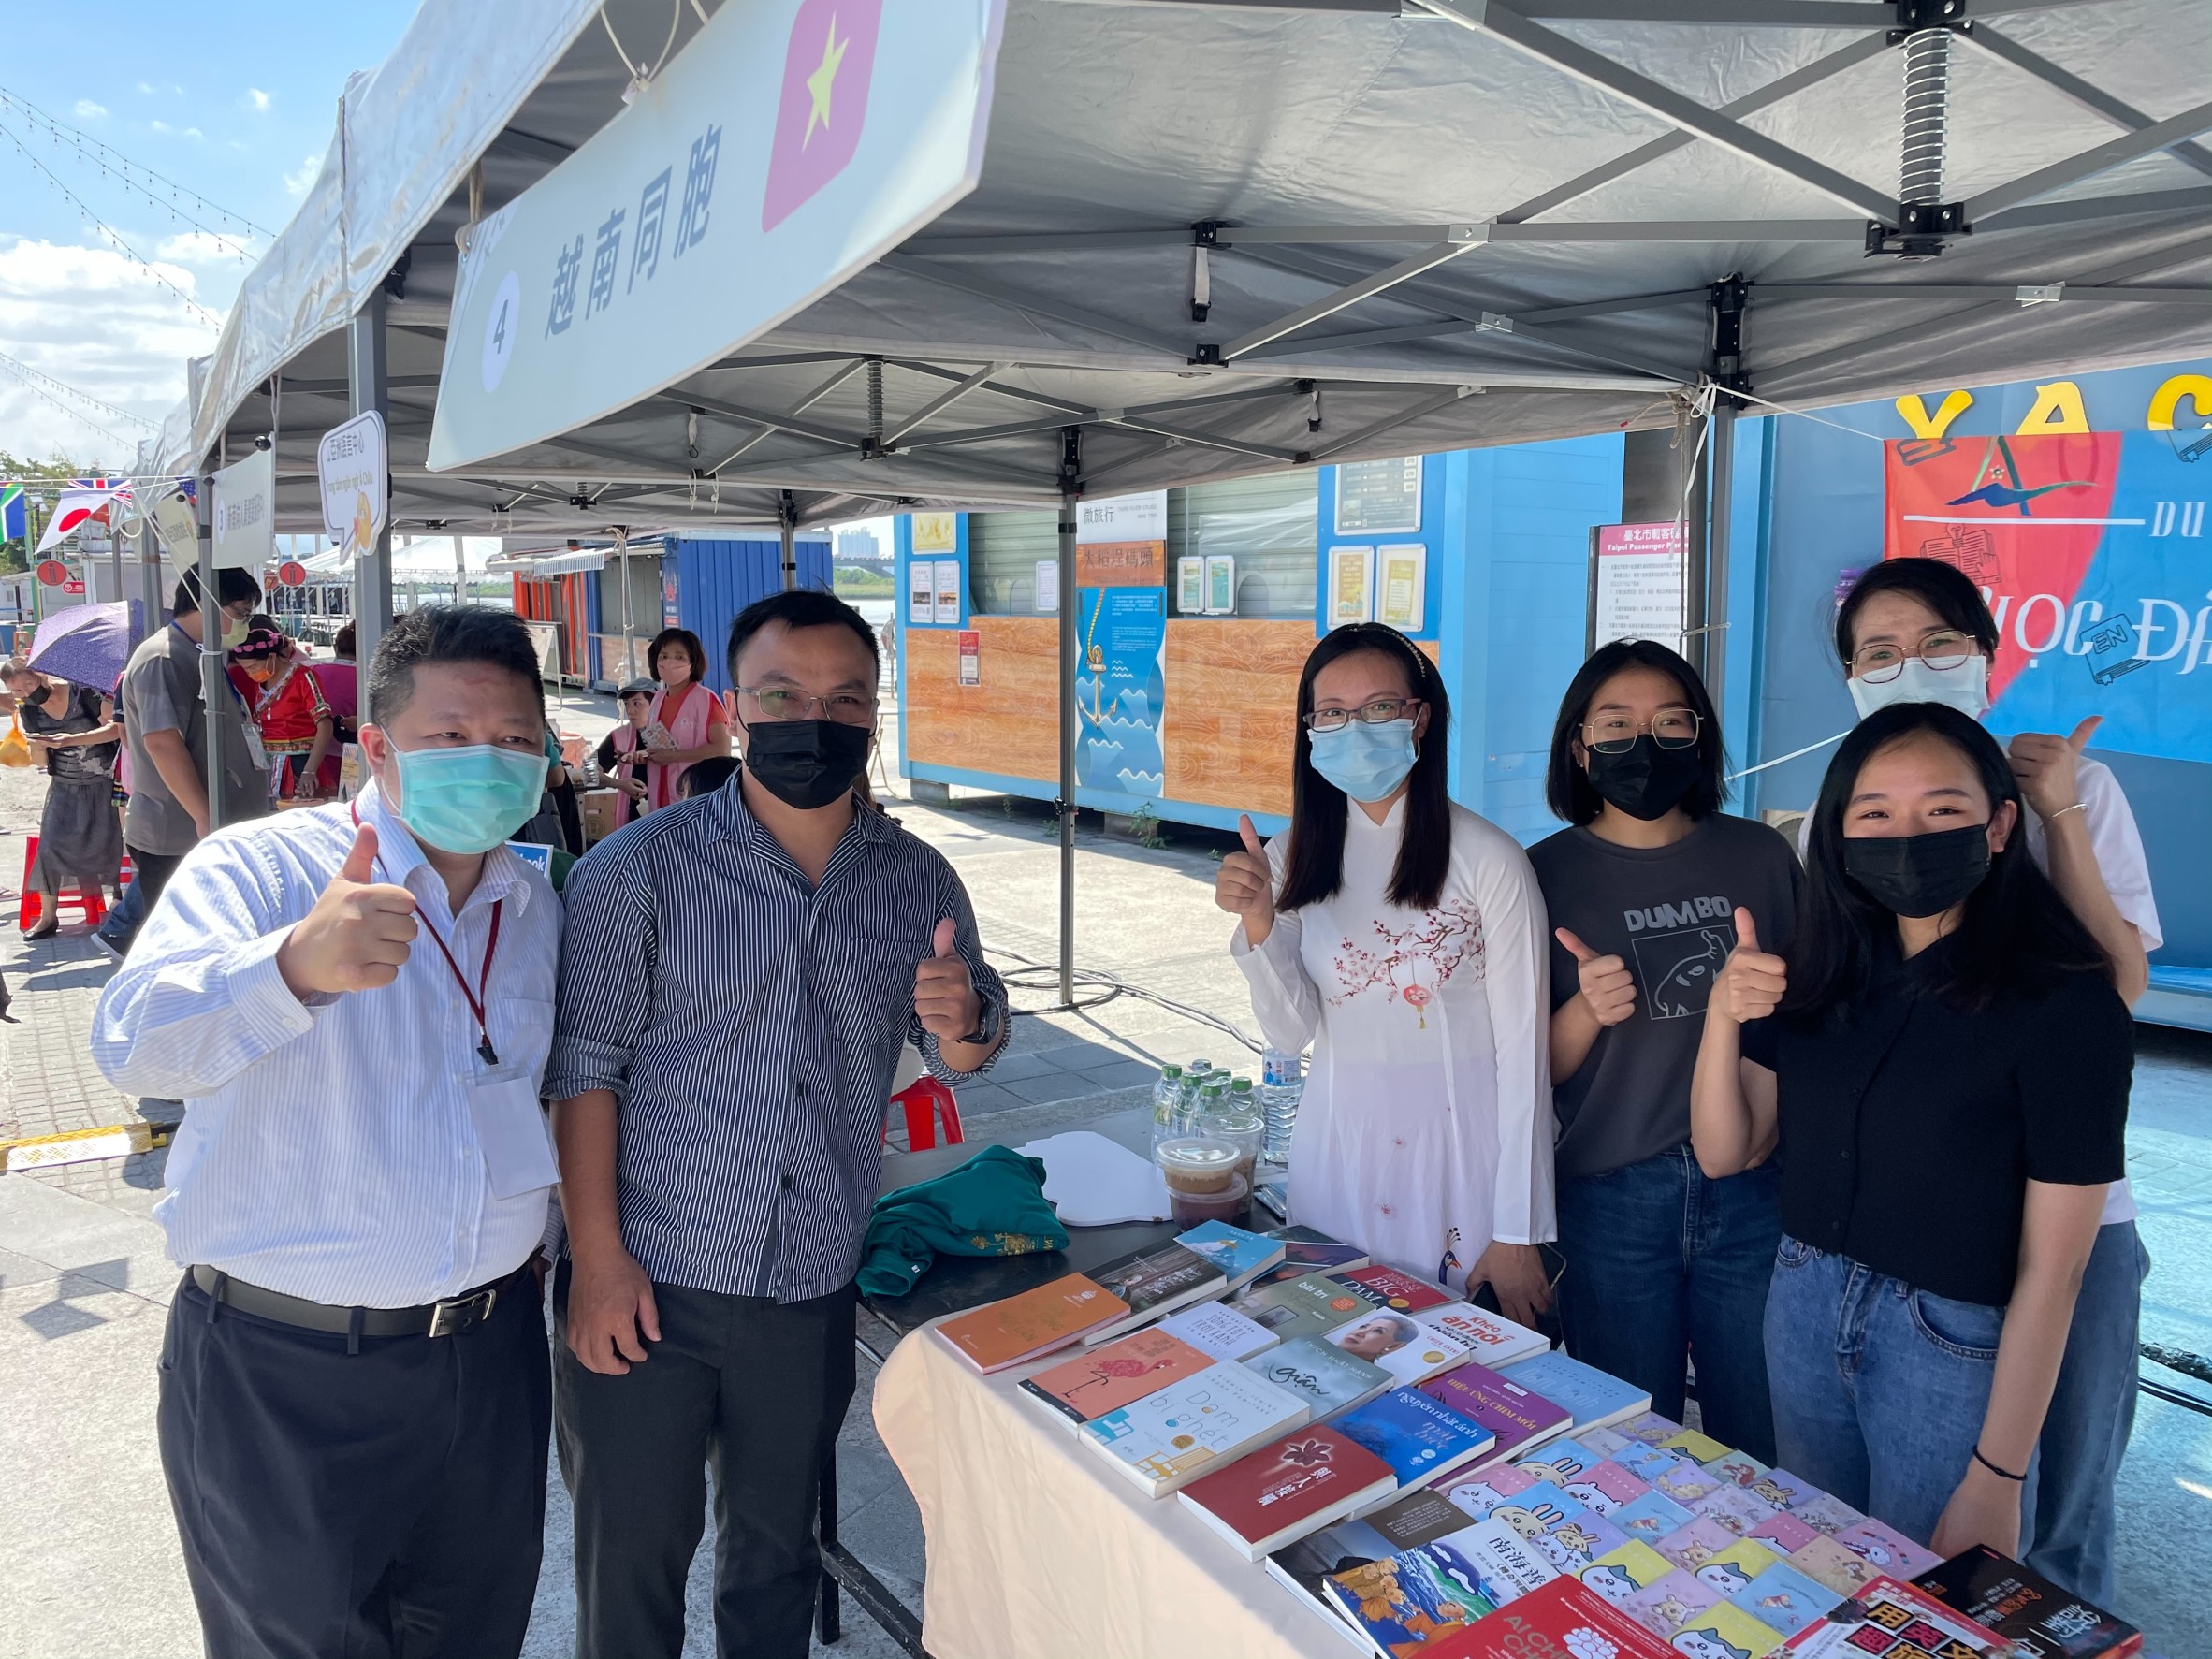 台 灣 畢 業 留 台 發 展 的 黎 城 忠 校 友 ( 左 二 ) ， 結 合 越 南 新 移 民 家 庭 、 留 學 生 初 次 聯 合 參 加 ， 展 示 義 賣 書 籍 ， 分 享 越 南 文 化 。 